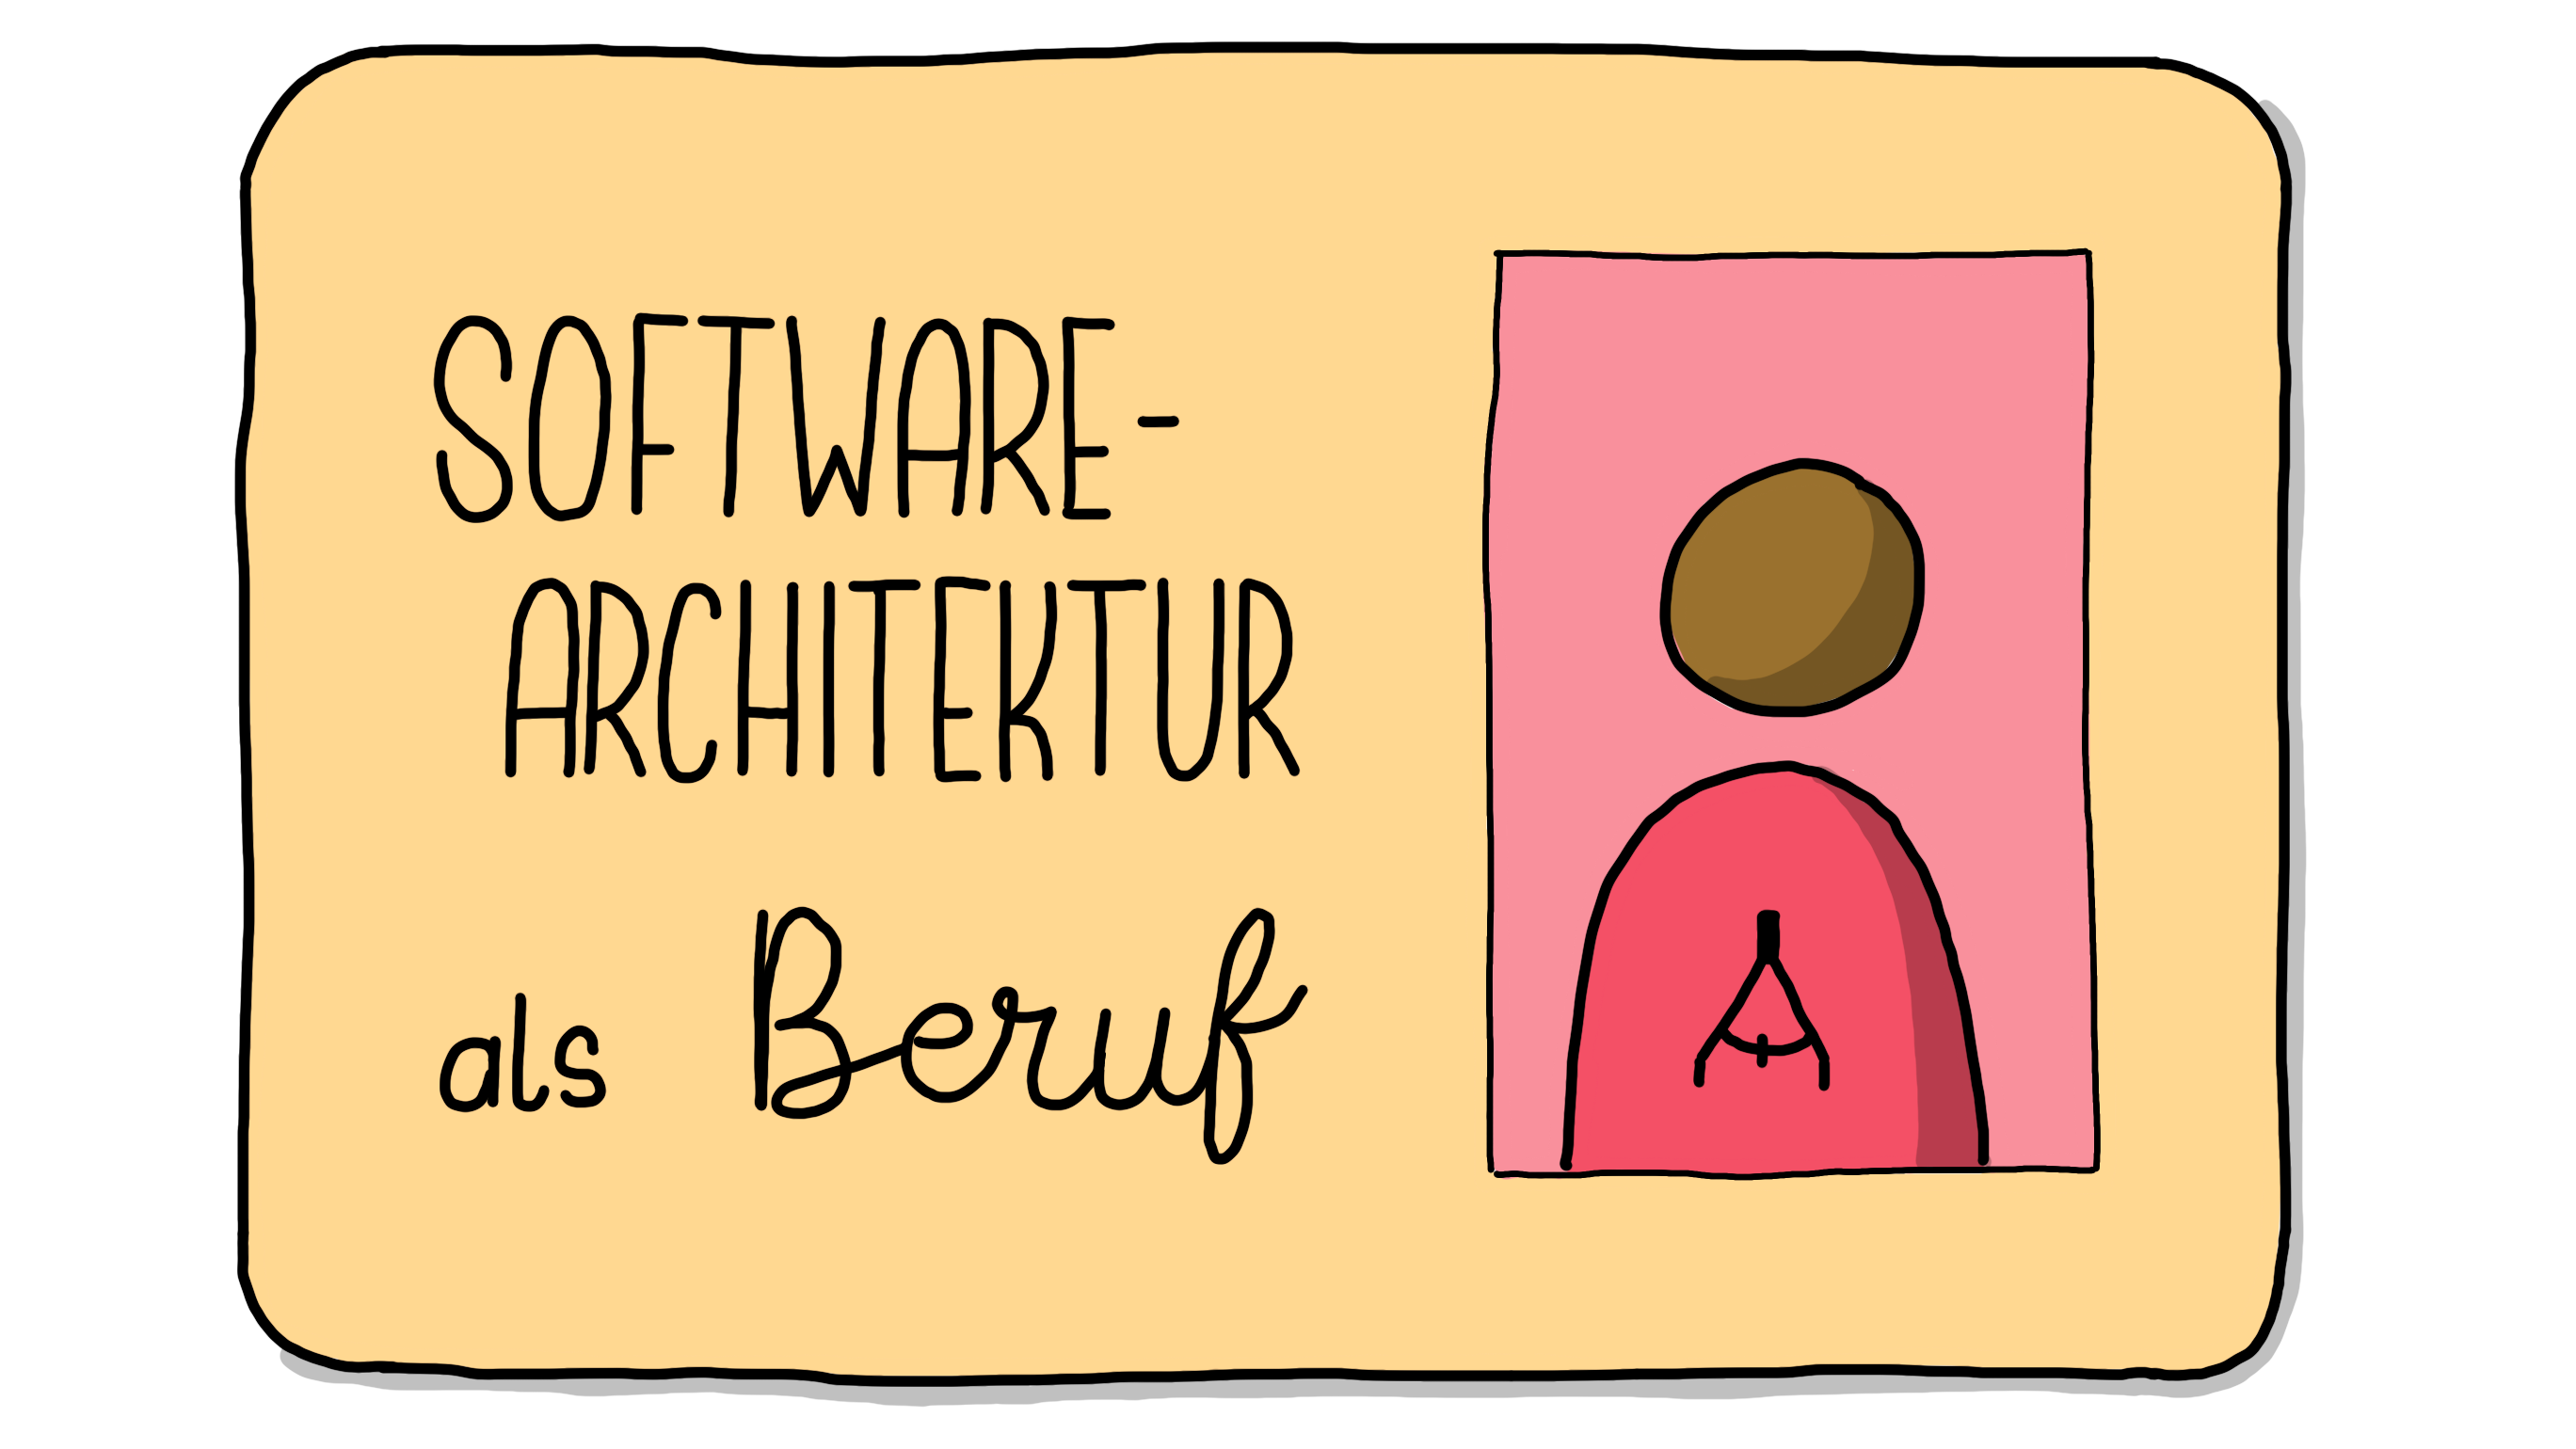 Software-Architektur als Beruf Logo